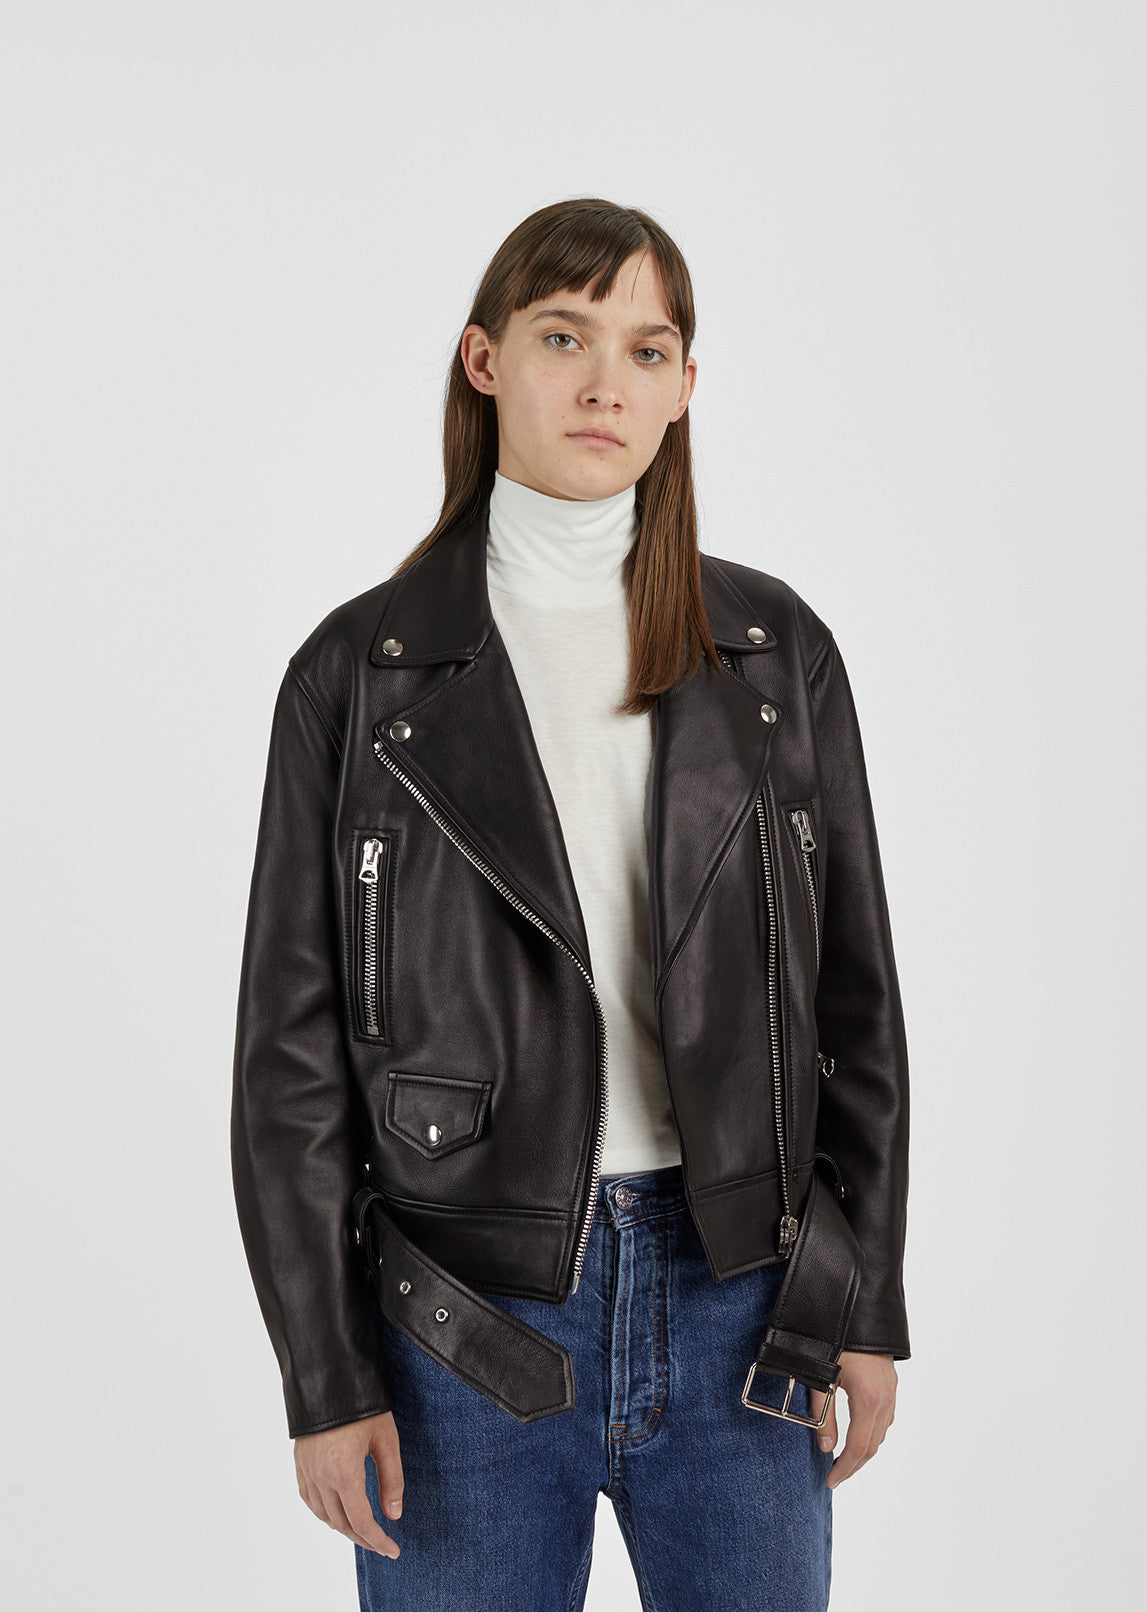 Merlyn Leather Jacket by Acne Studios- La Garçonne